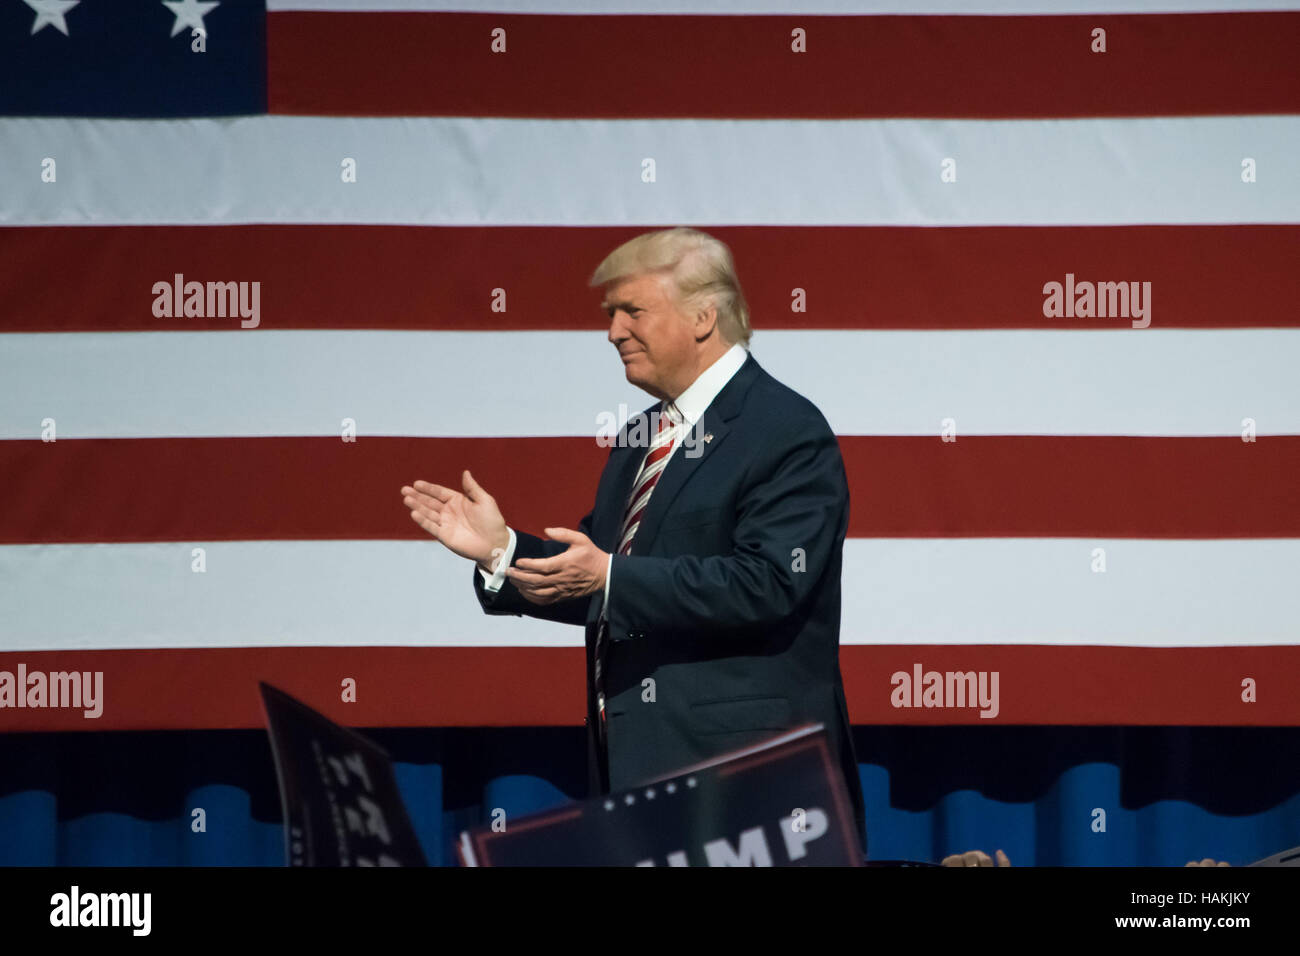 Candidat présidentiel républicain Donald Trump marcher sur scène saluer la foule près du drapeau américain. Banque D'Images